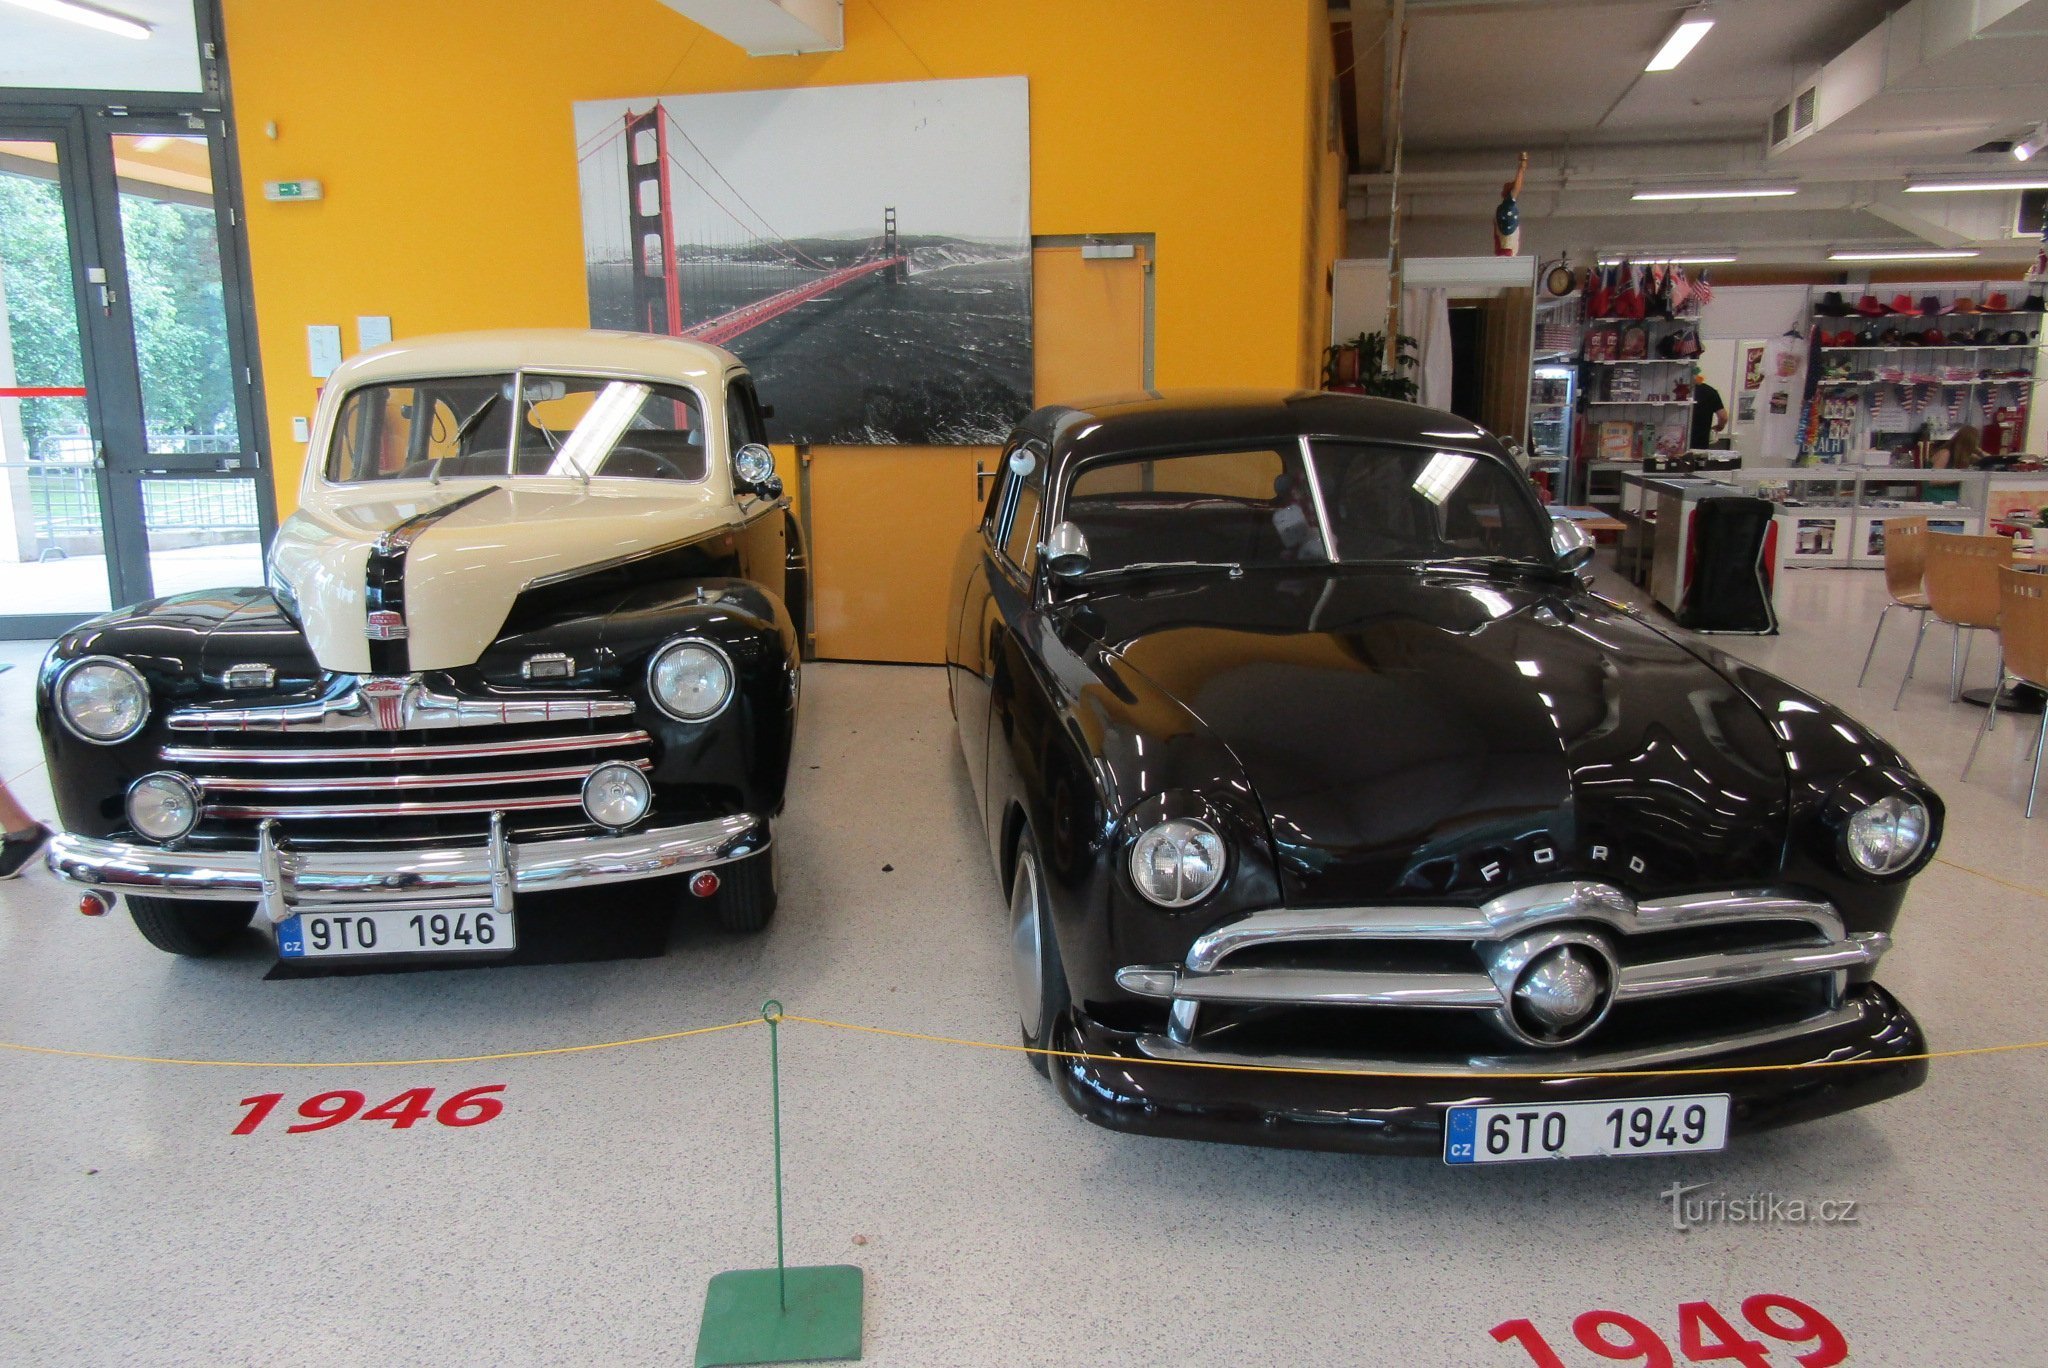 American Classic Cars, Černá Louka udstillingscenter, Ostrava